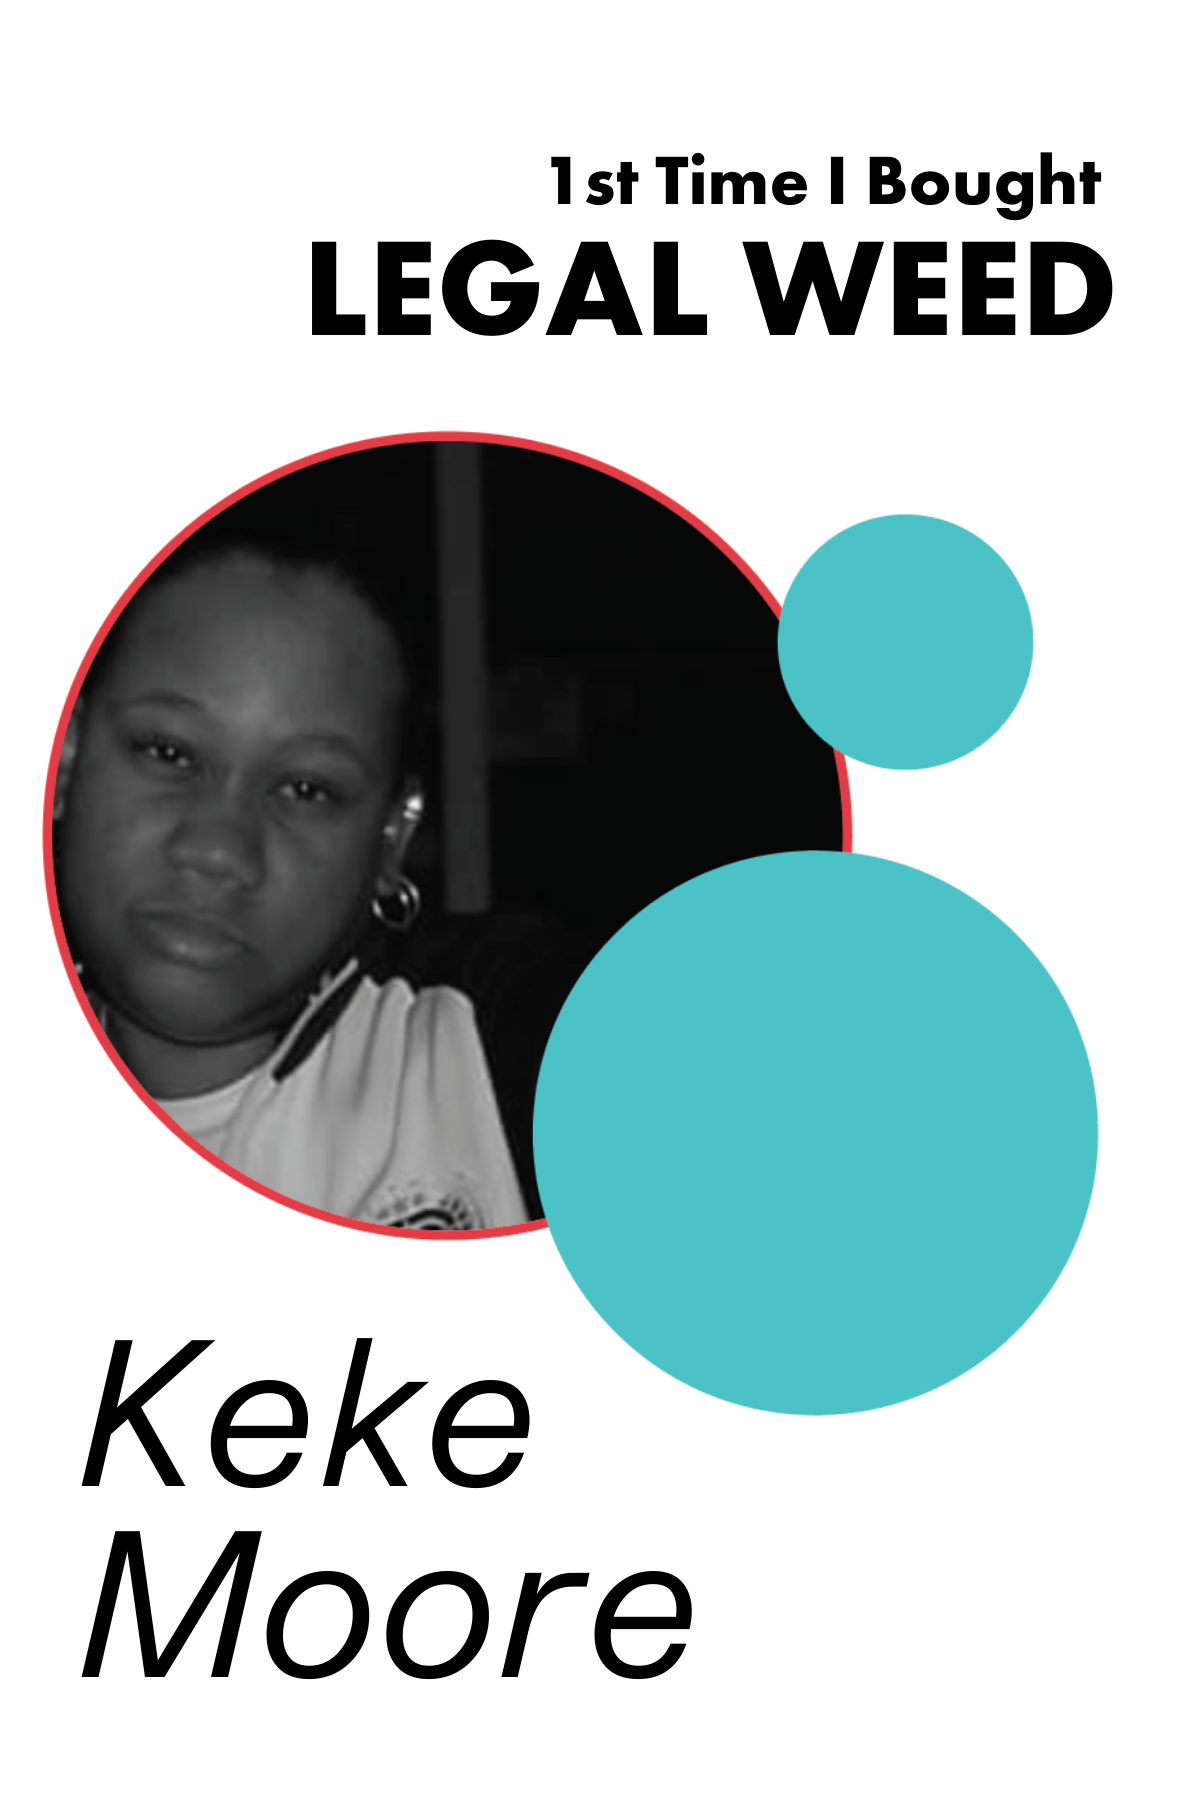 68. 1st time I bought legal weed: Keke Moore of LikeMindz420